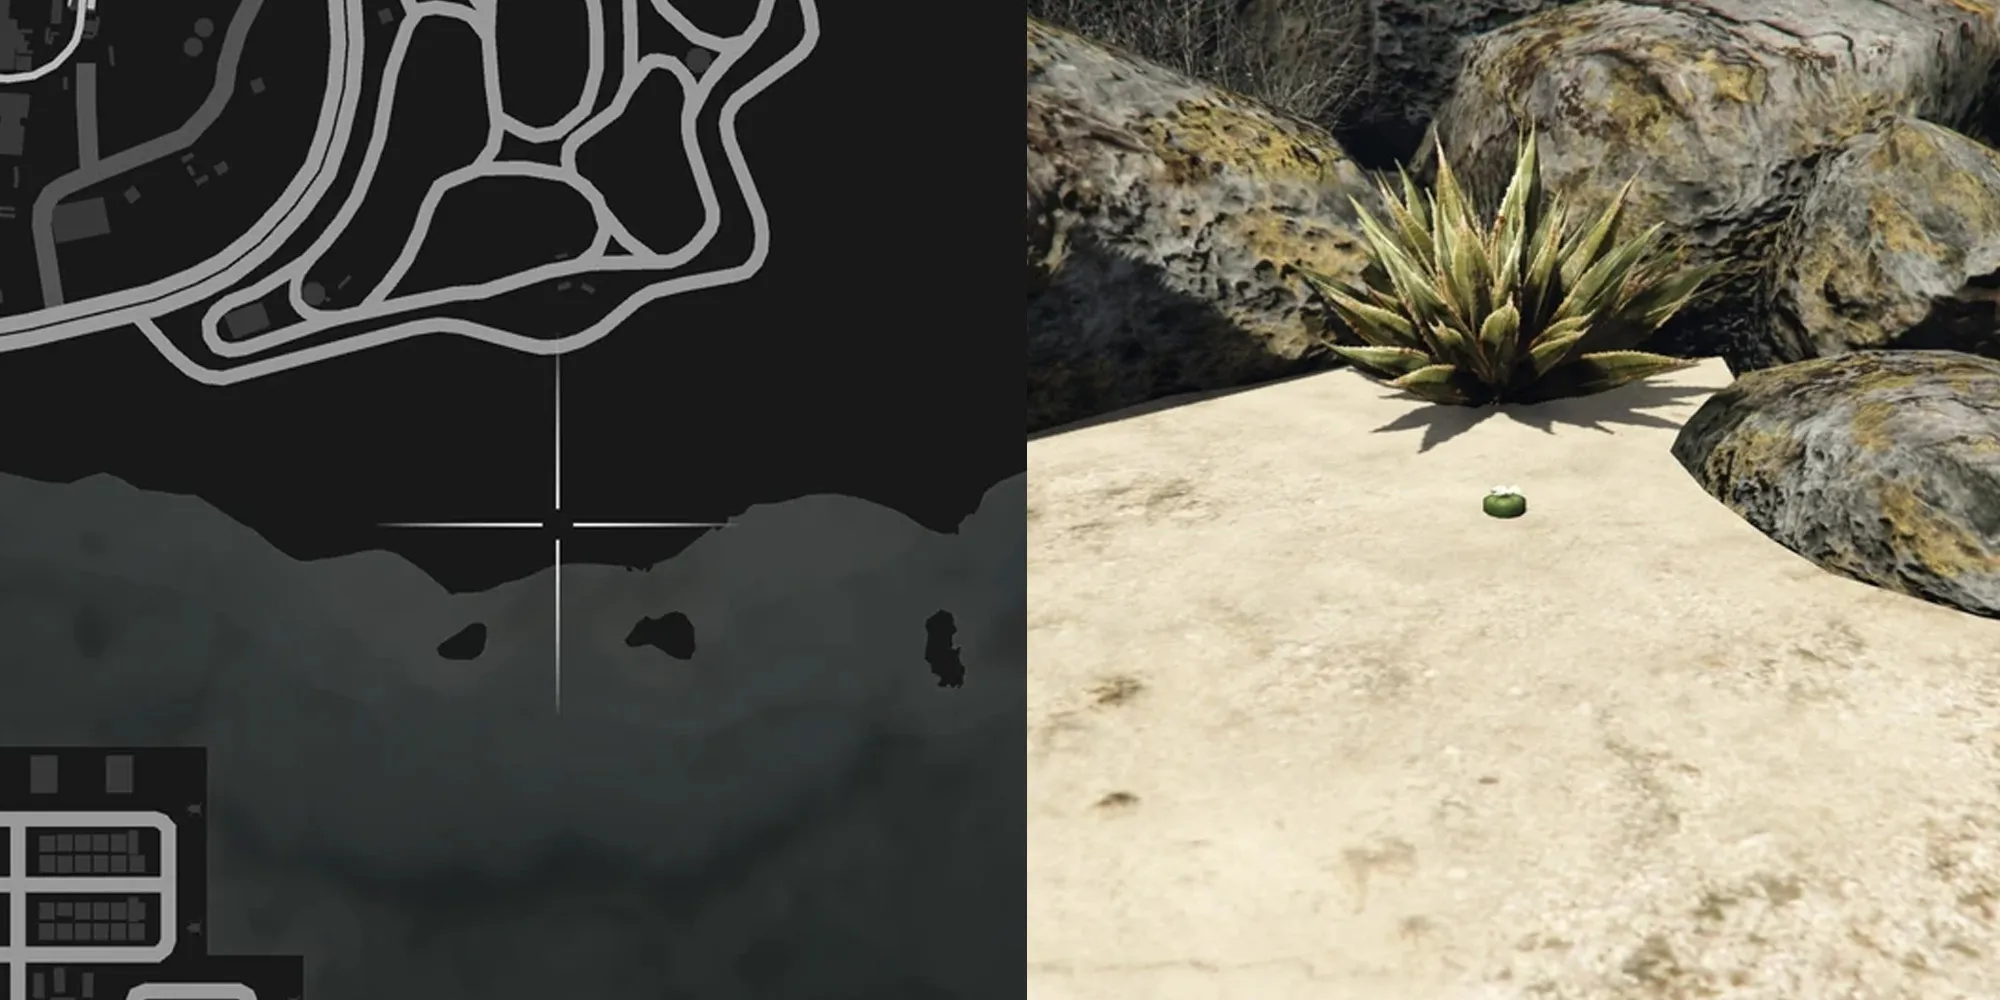 Ubicación del cactus Peyote en GTA Online número 6